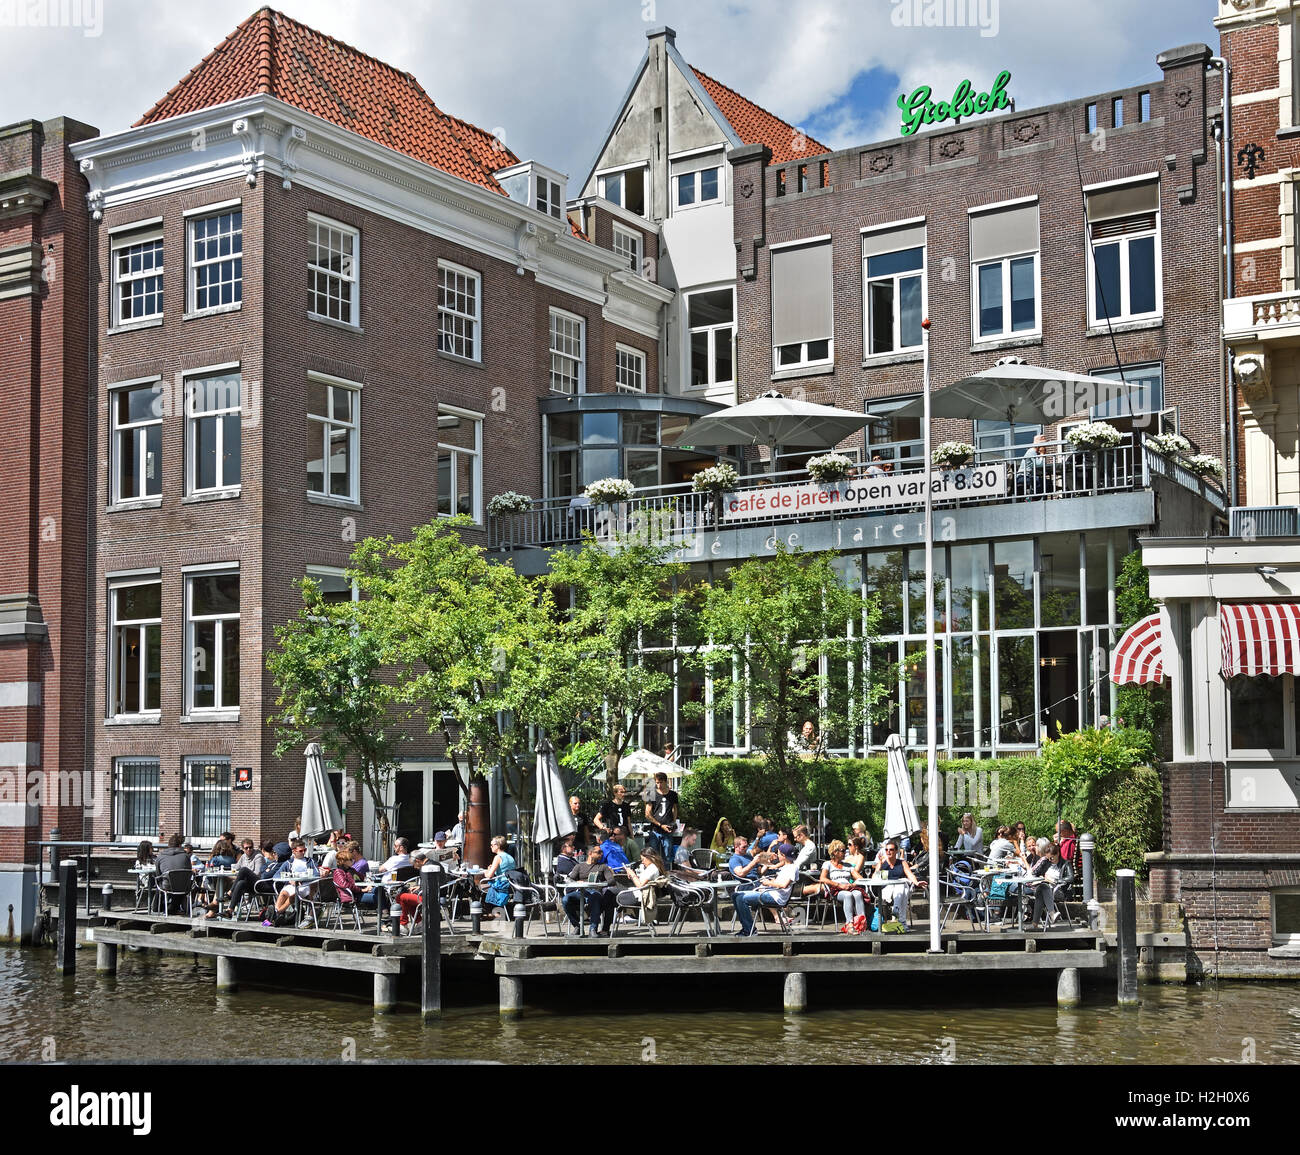 Café de jaren côté canal exposée sur l'Amstel Amsterdam Pays-Bas Néerlandais Banque D'Images